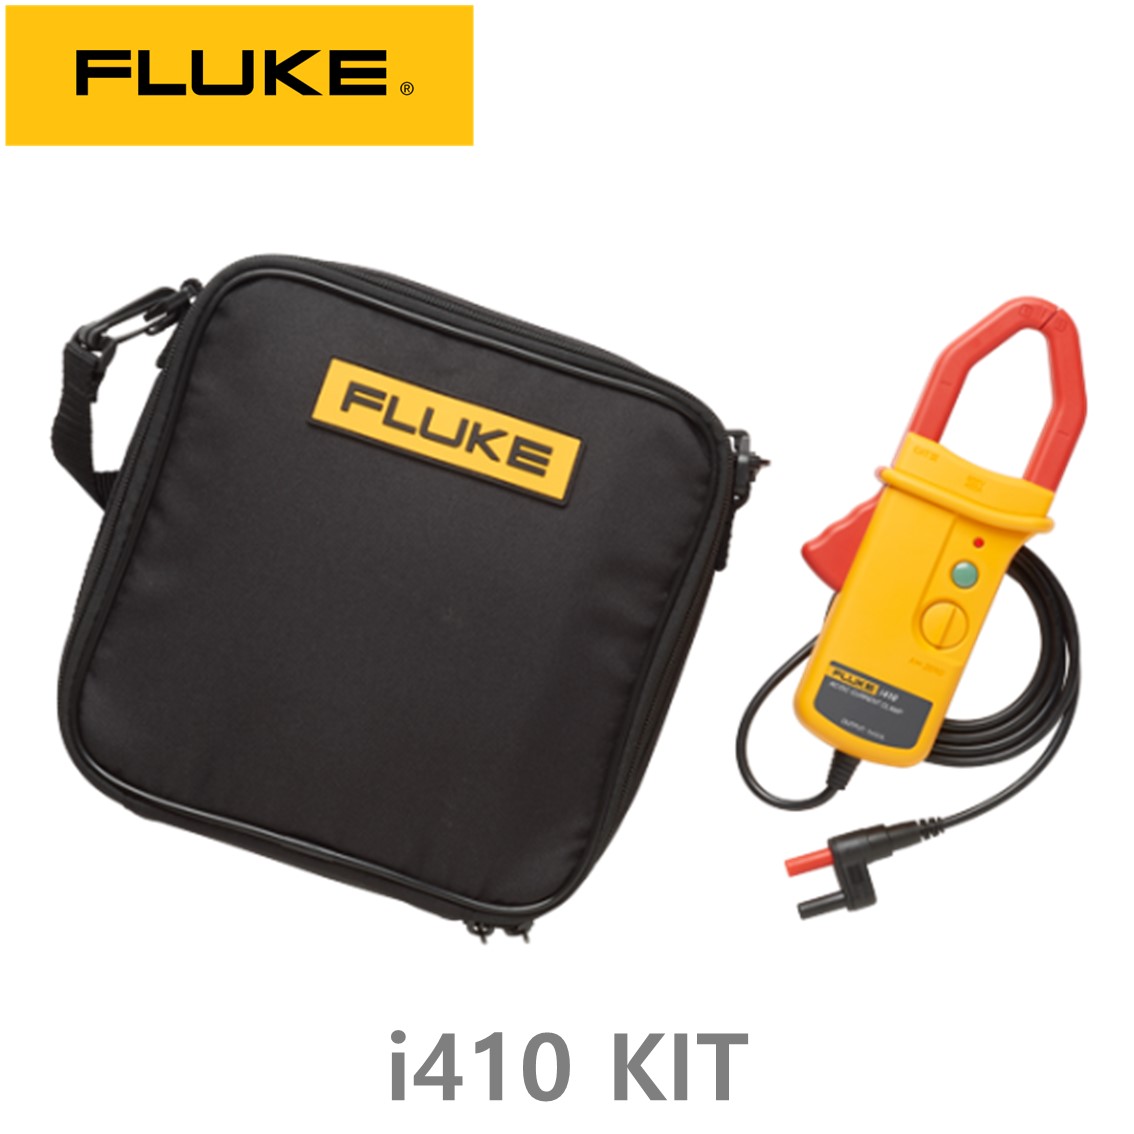 [ FLUKE i410 KIT ] 플루크 전류클램프 키트 (CASE포함) AC/DC 400A